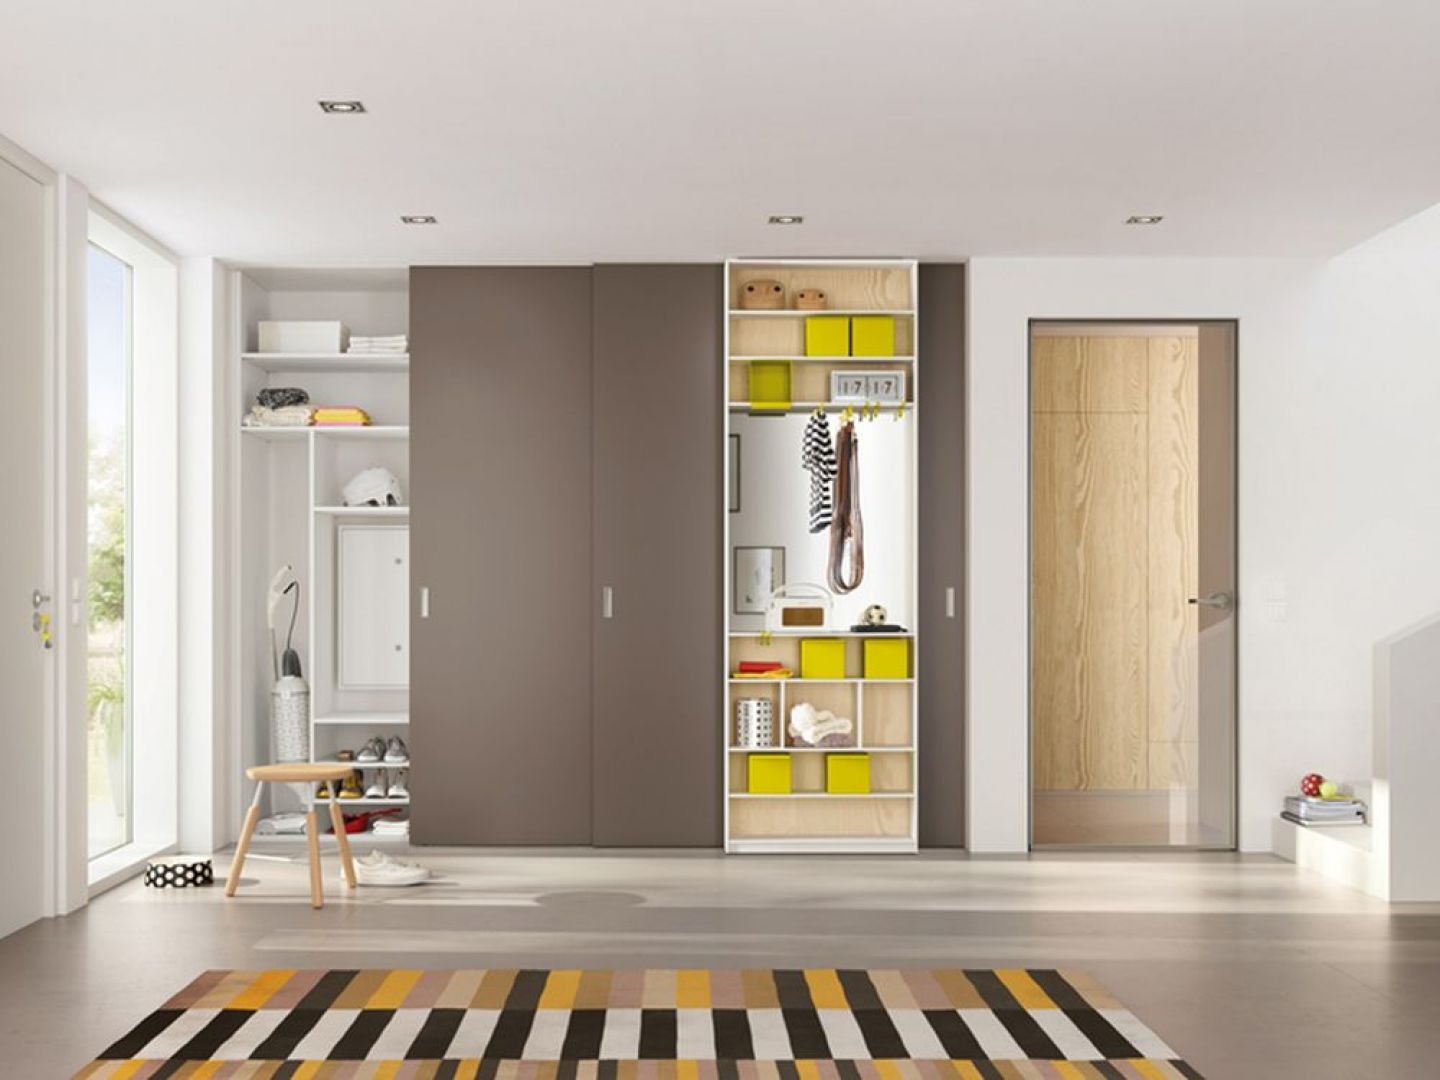 Wnętrze szafy na zamówienie można wyposażyć w funkcjonalne przegródki, półki oraz szuflady. Fot. Raumplus